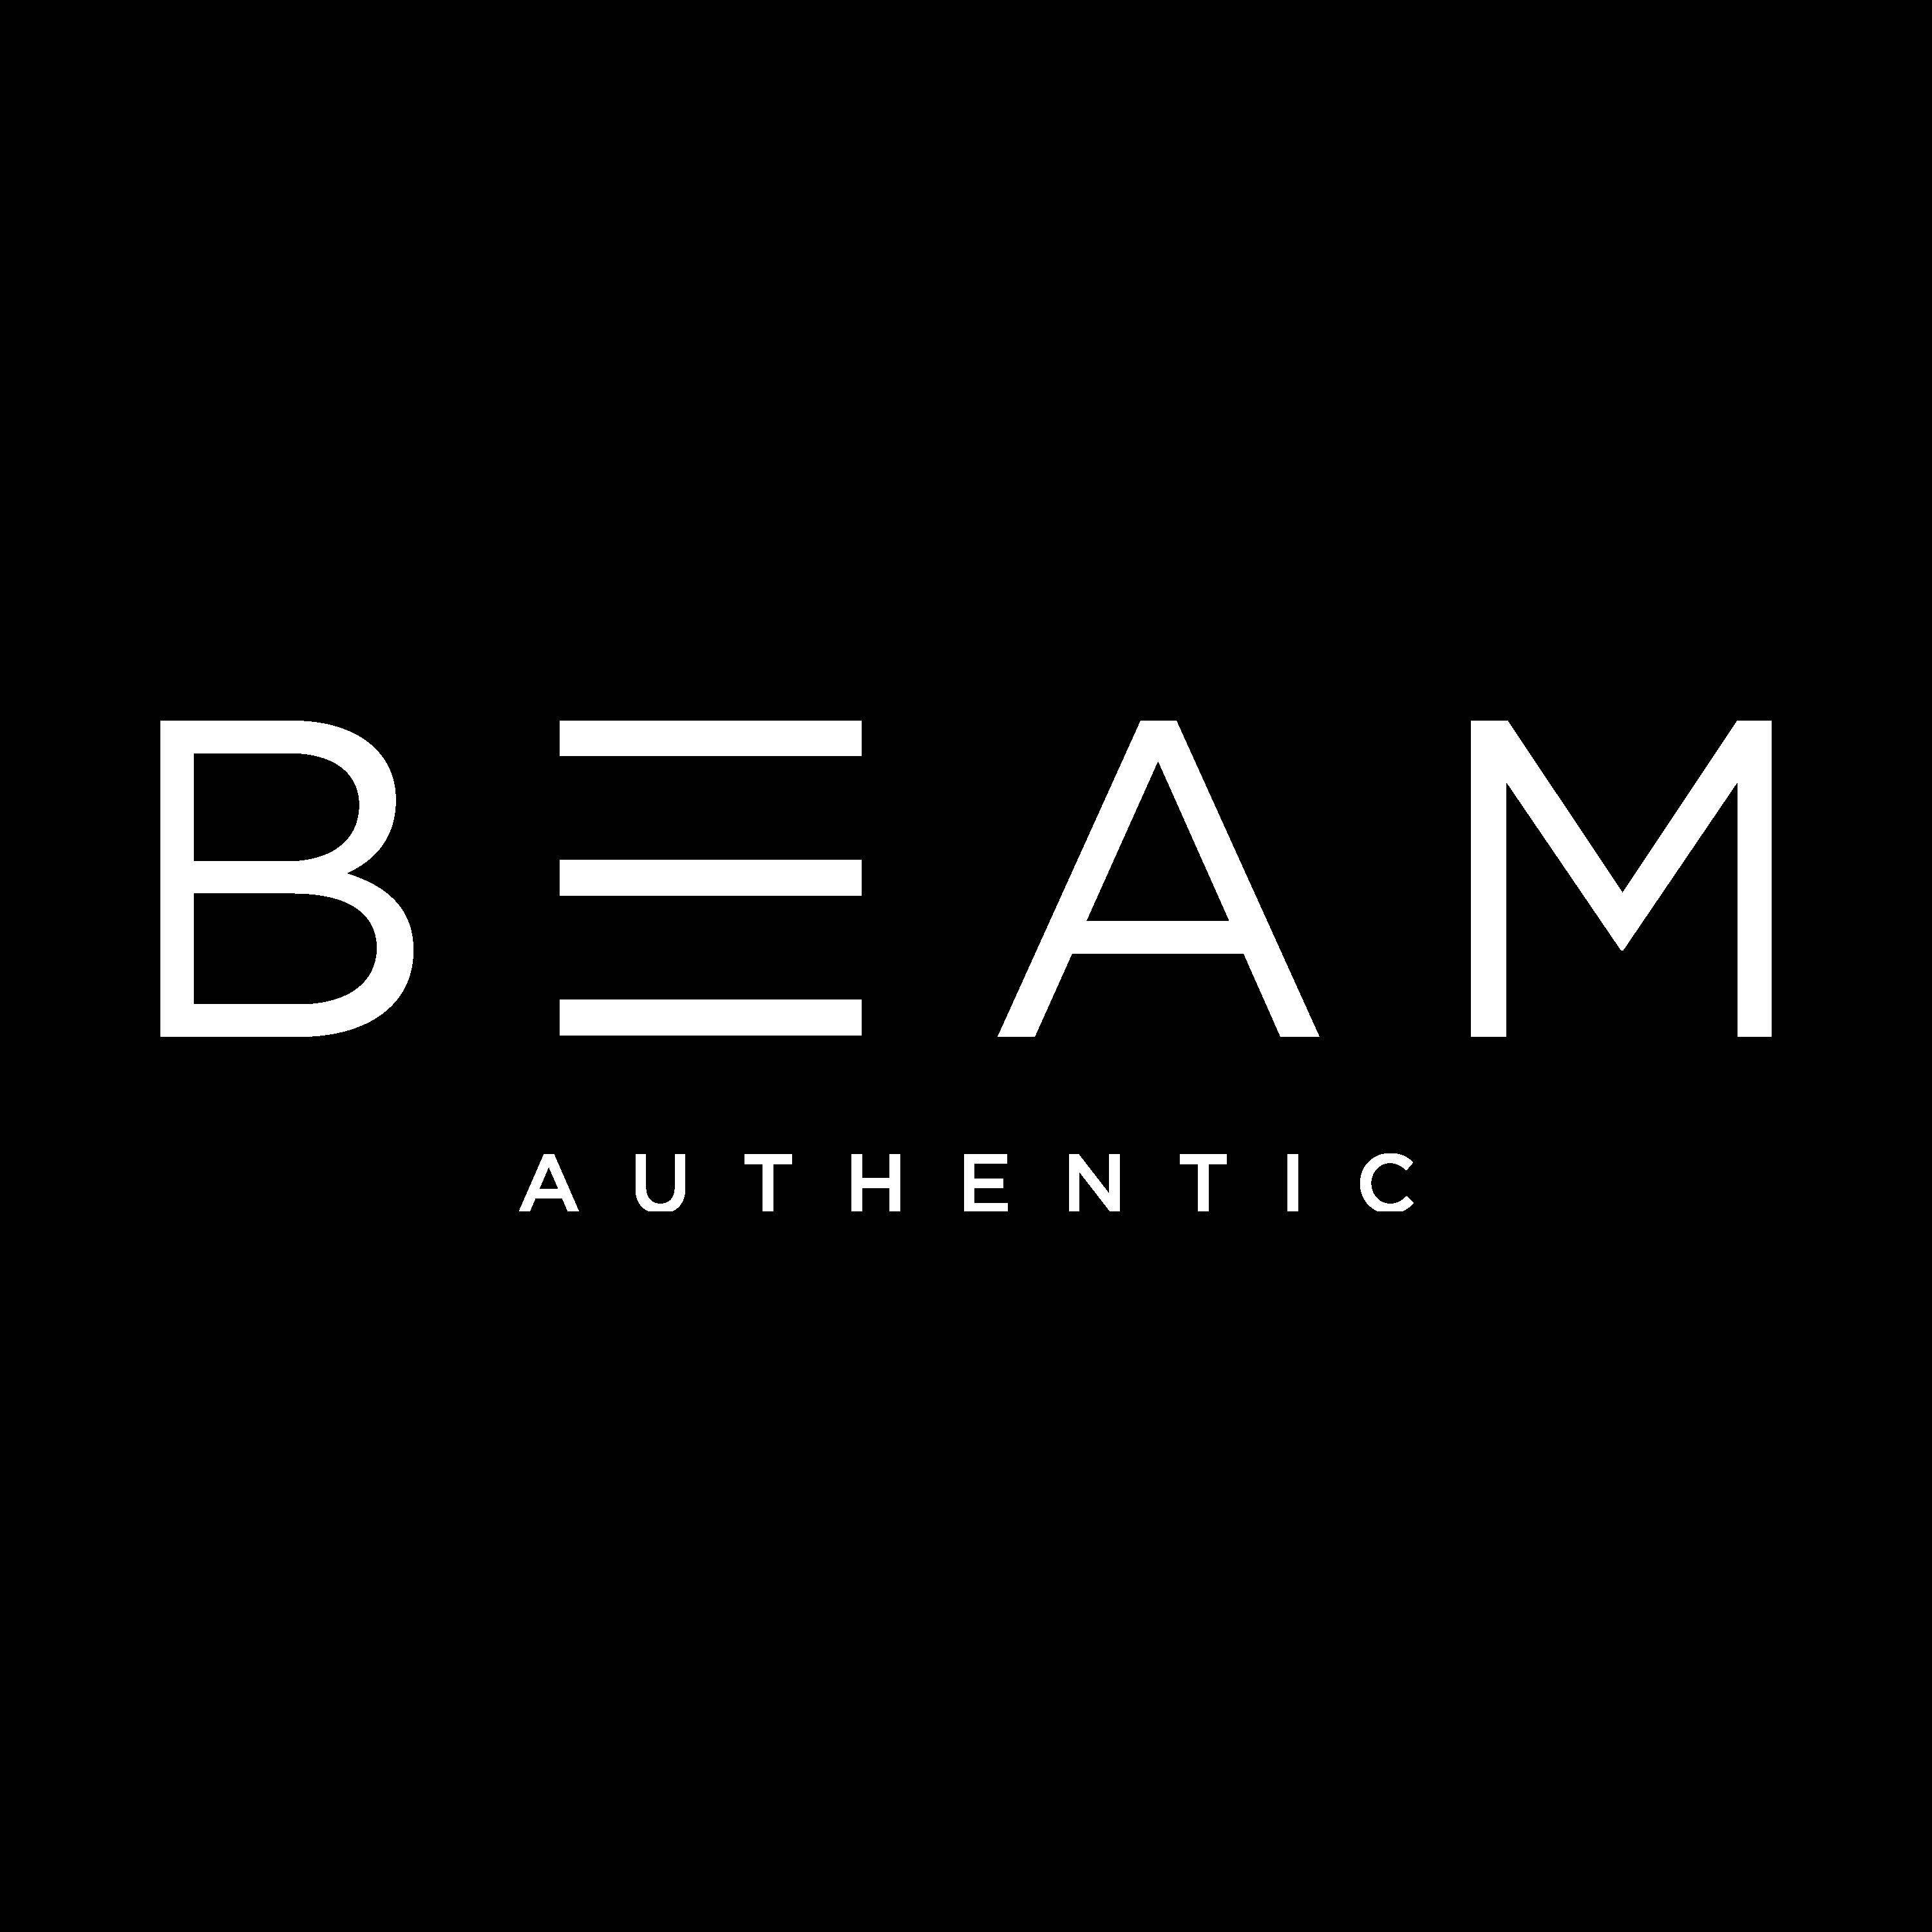 Authentic Logo - Beam Authentic